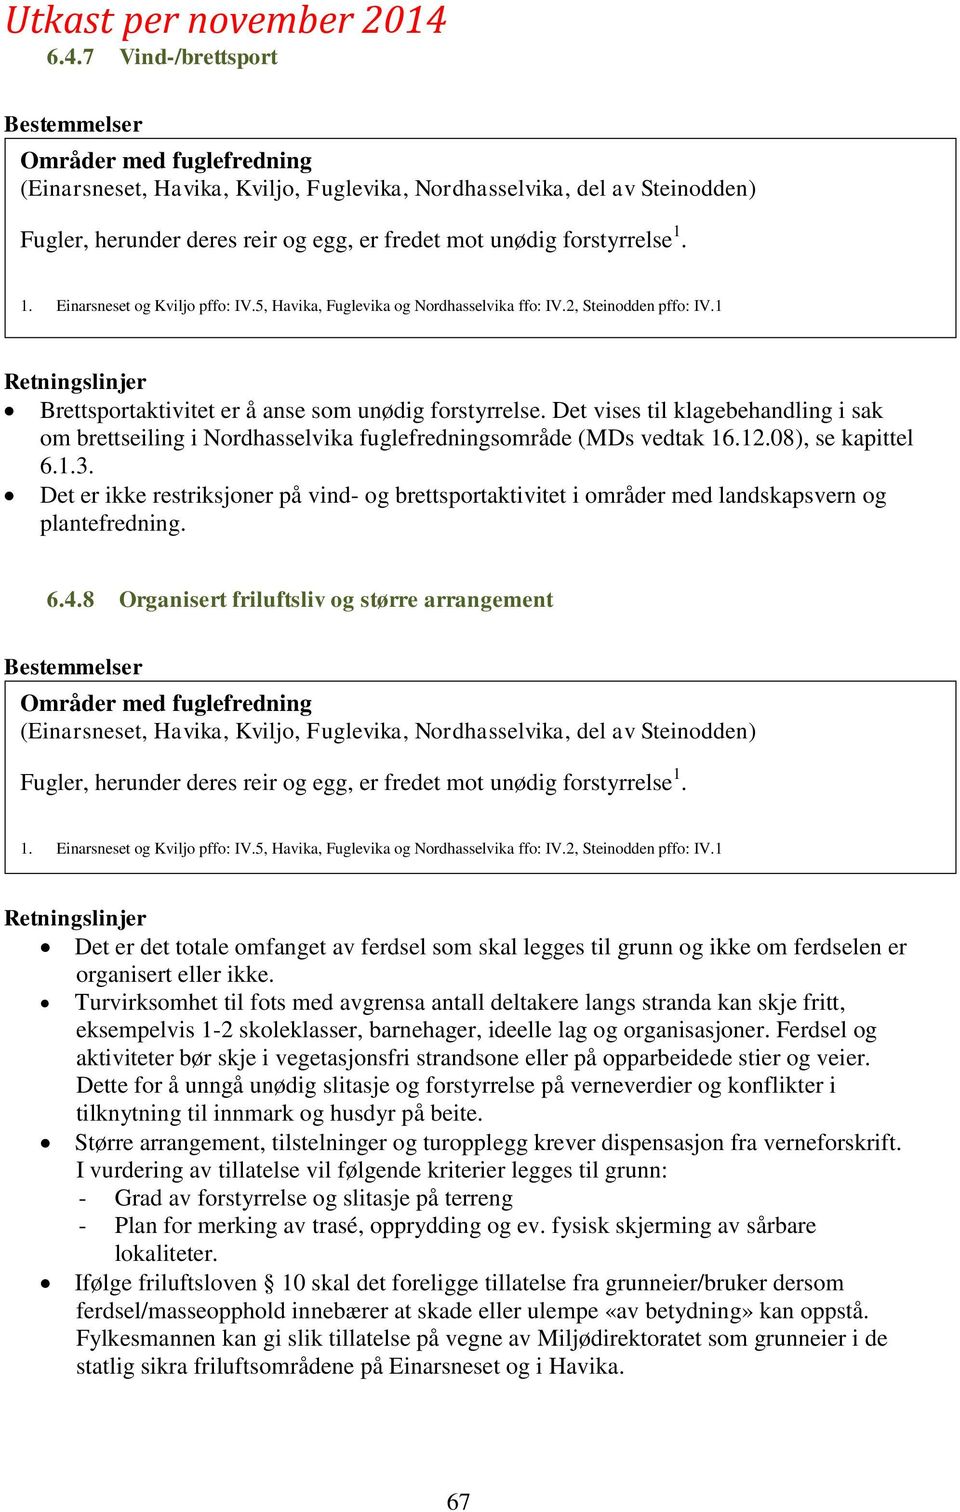 Det vises til klagebehandling i sak om brettseiling i Nordhasselvika fuglefredningsområde (MDs vedtak 16.12.08), se kapittel 6.1.3.